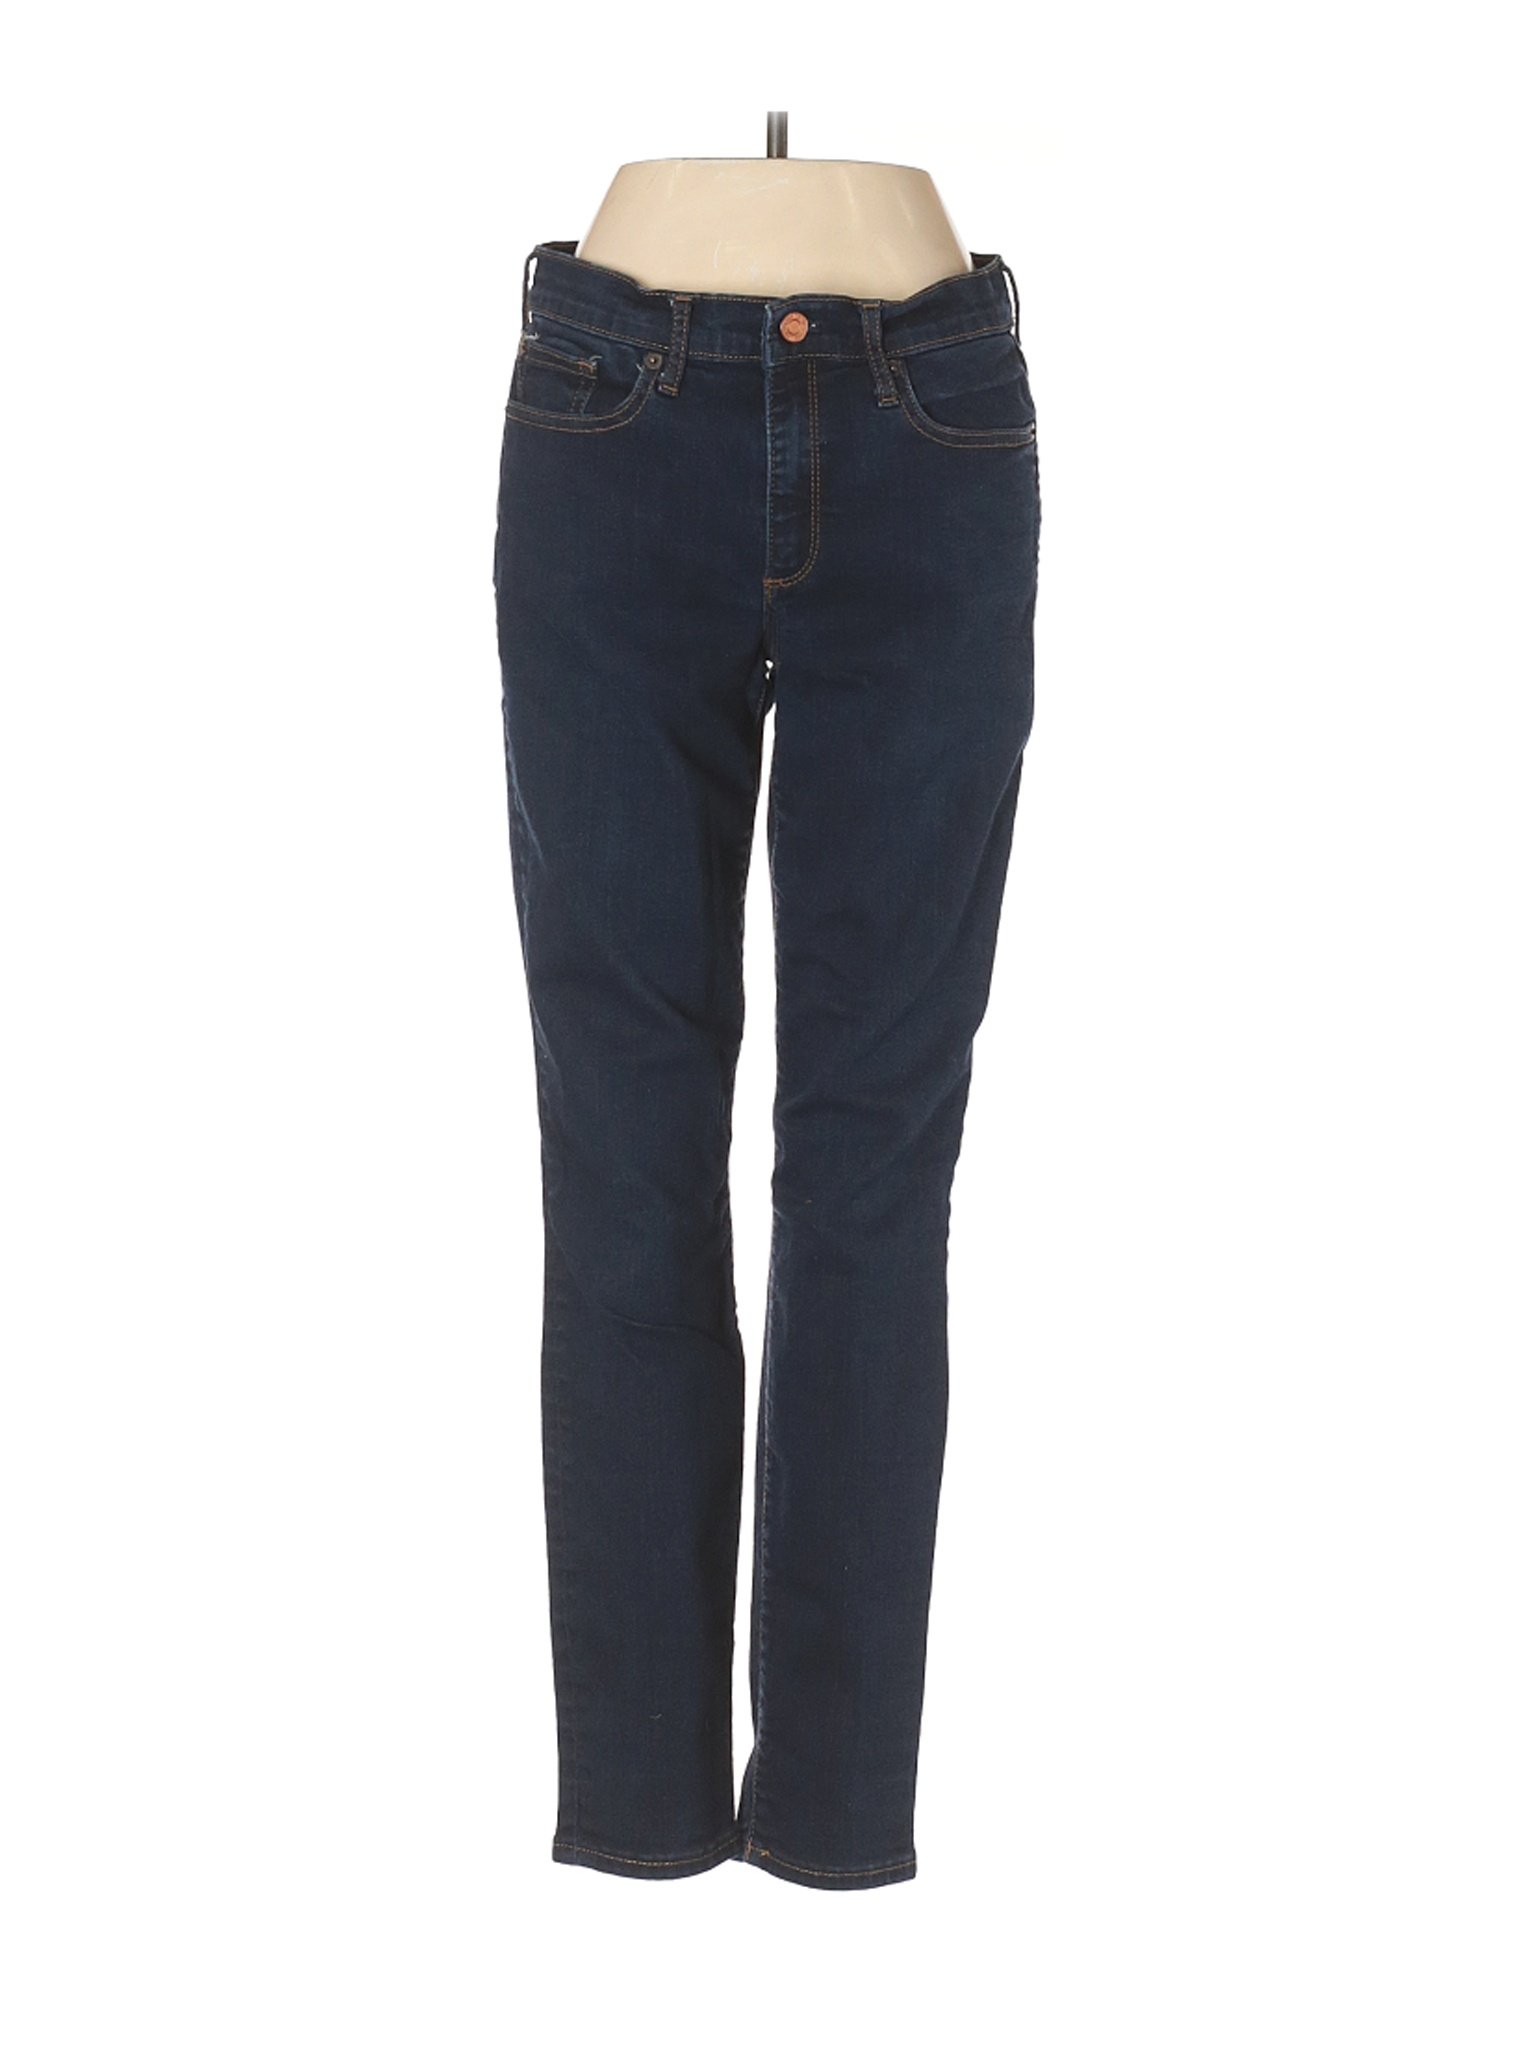 Gap Women Blue Jeans 26W | eBay